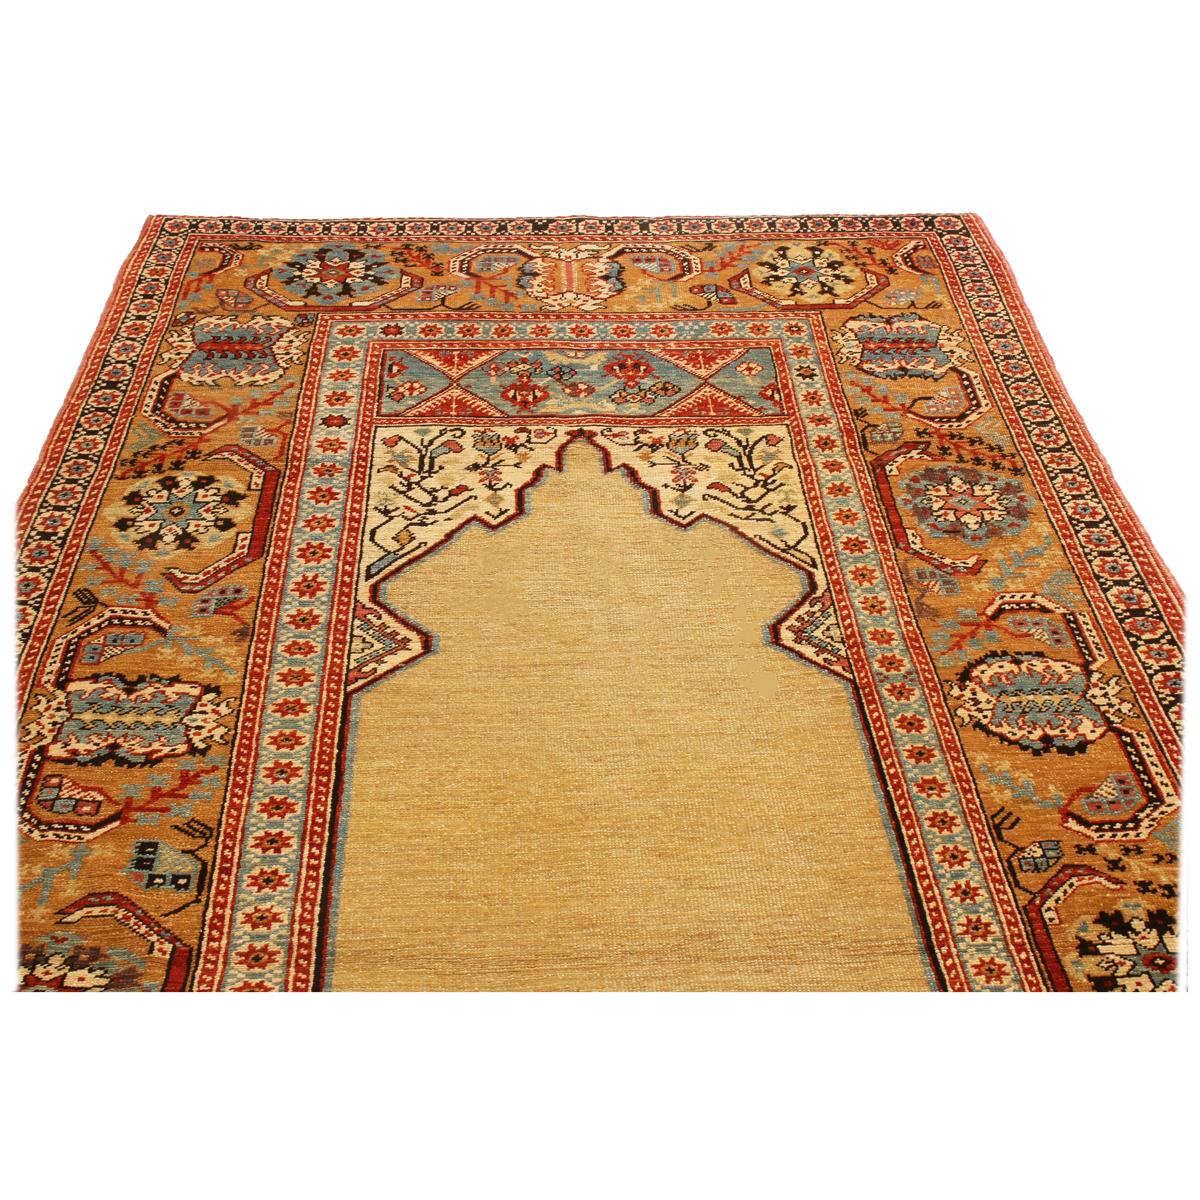 Dieser aus der Türkei stammende Teppich aus Schurwolle zeigt ein Ottomanen-Design in reichen und vielfältigen Farbgebungen, die an ausgewählte antike Stücke erinnern. Handgeknüpft aus hochwertiger Wolle mit niedrigem Flor, verleiht das offene